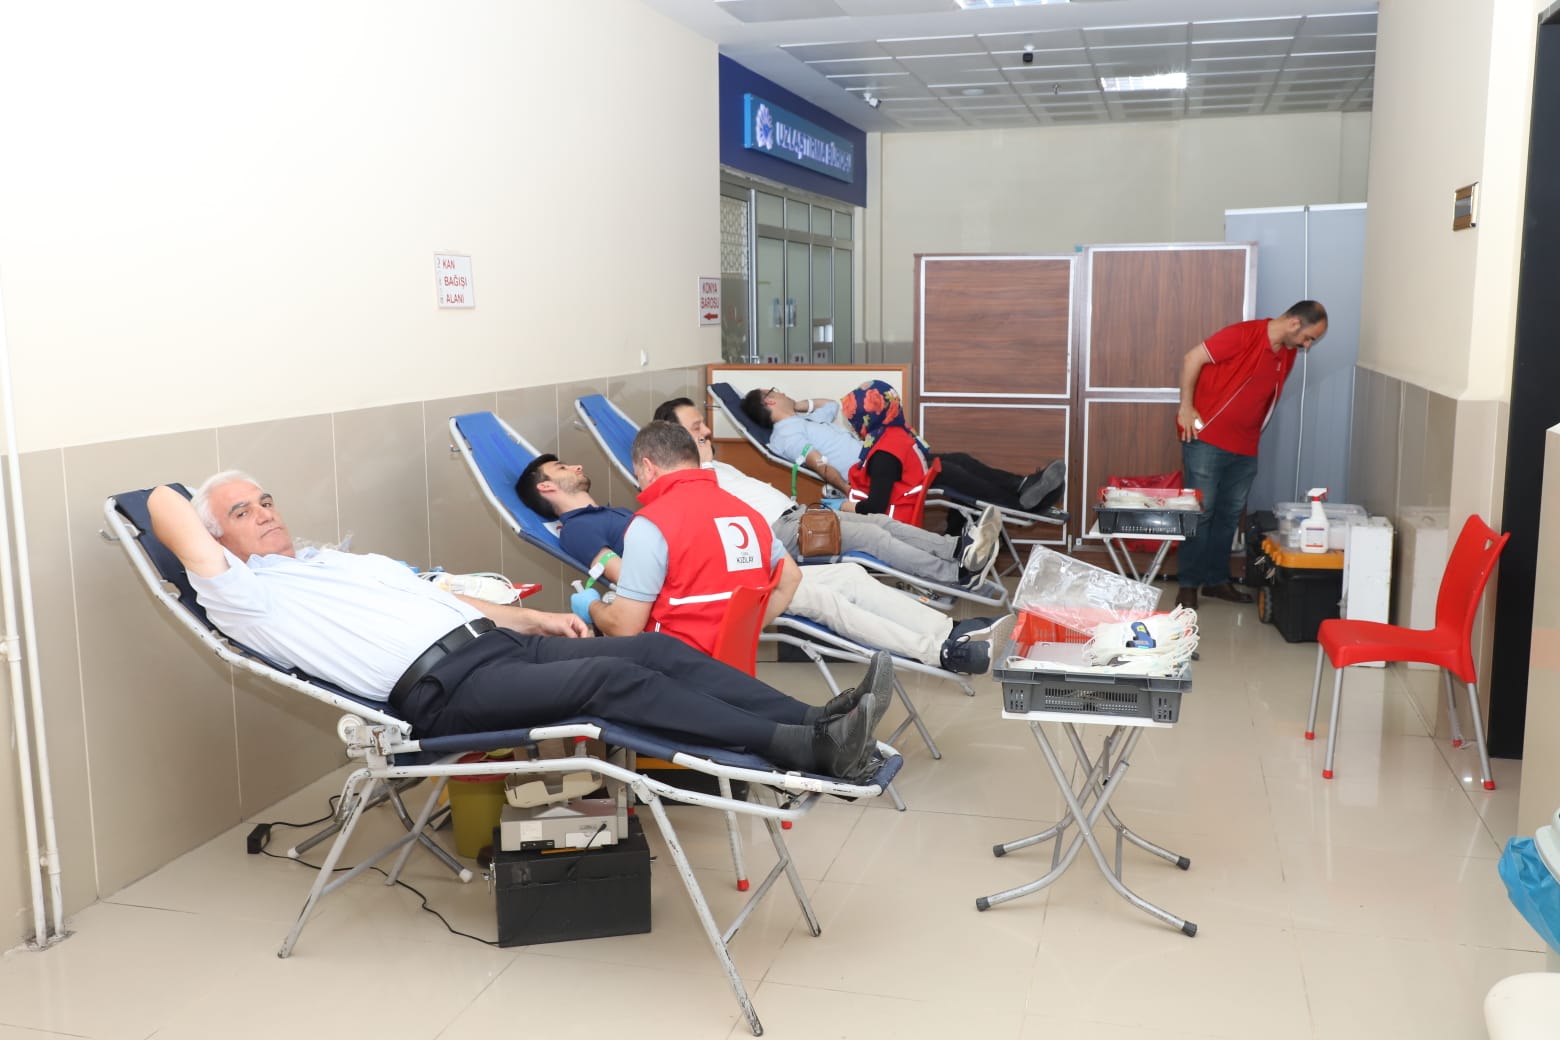 Konya Adliyesinde kan bağışı kampanyası yapıldı